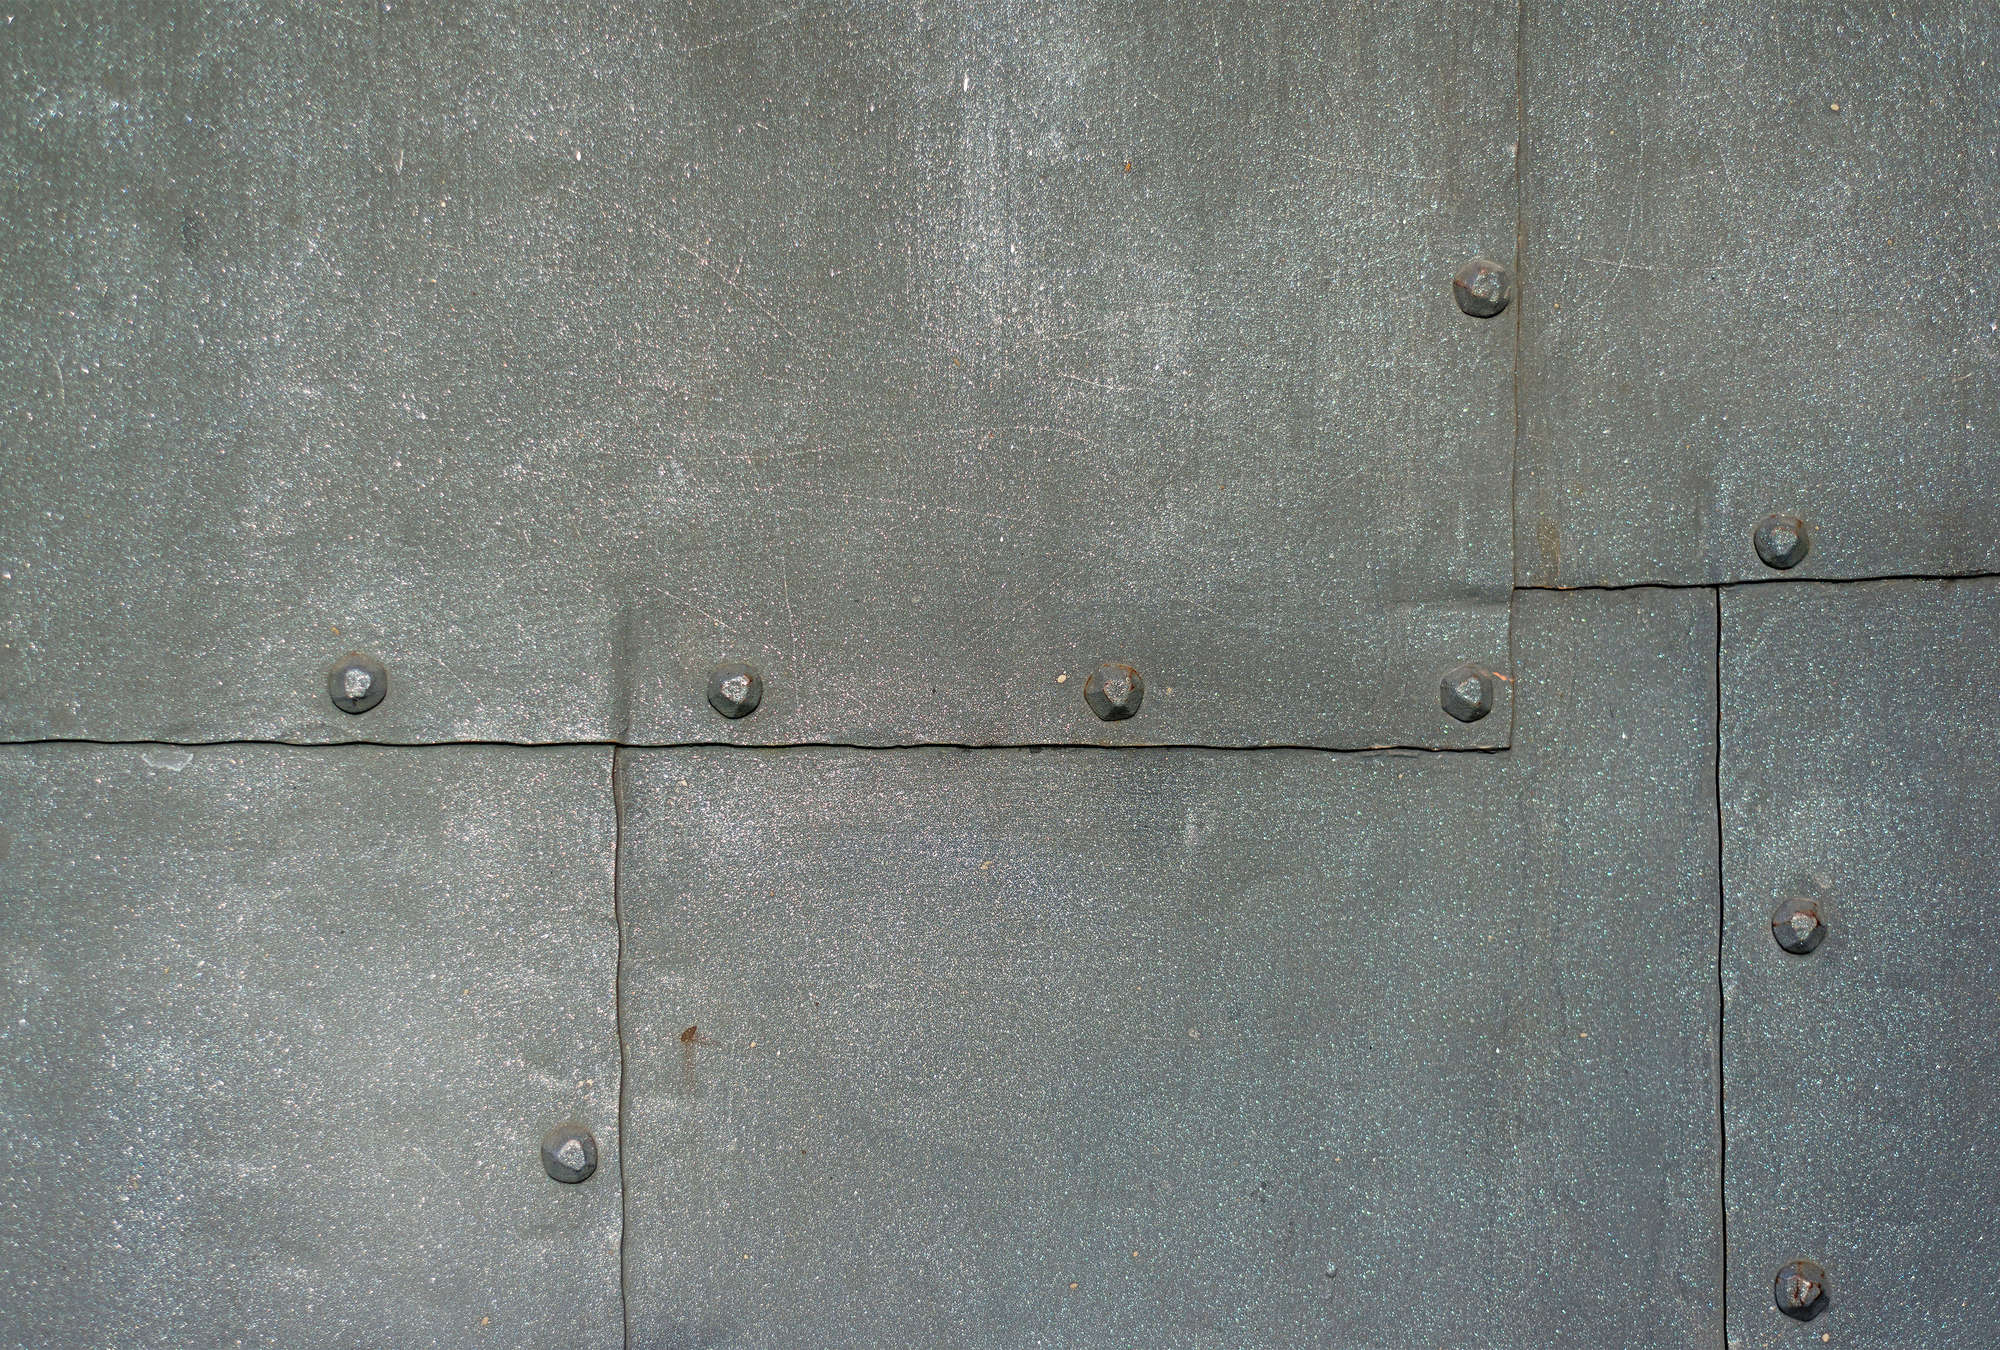             Metal mural steel grey plates & rivets
        